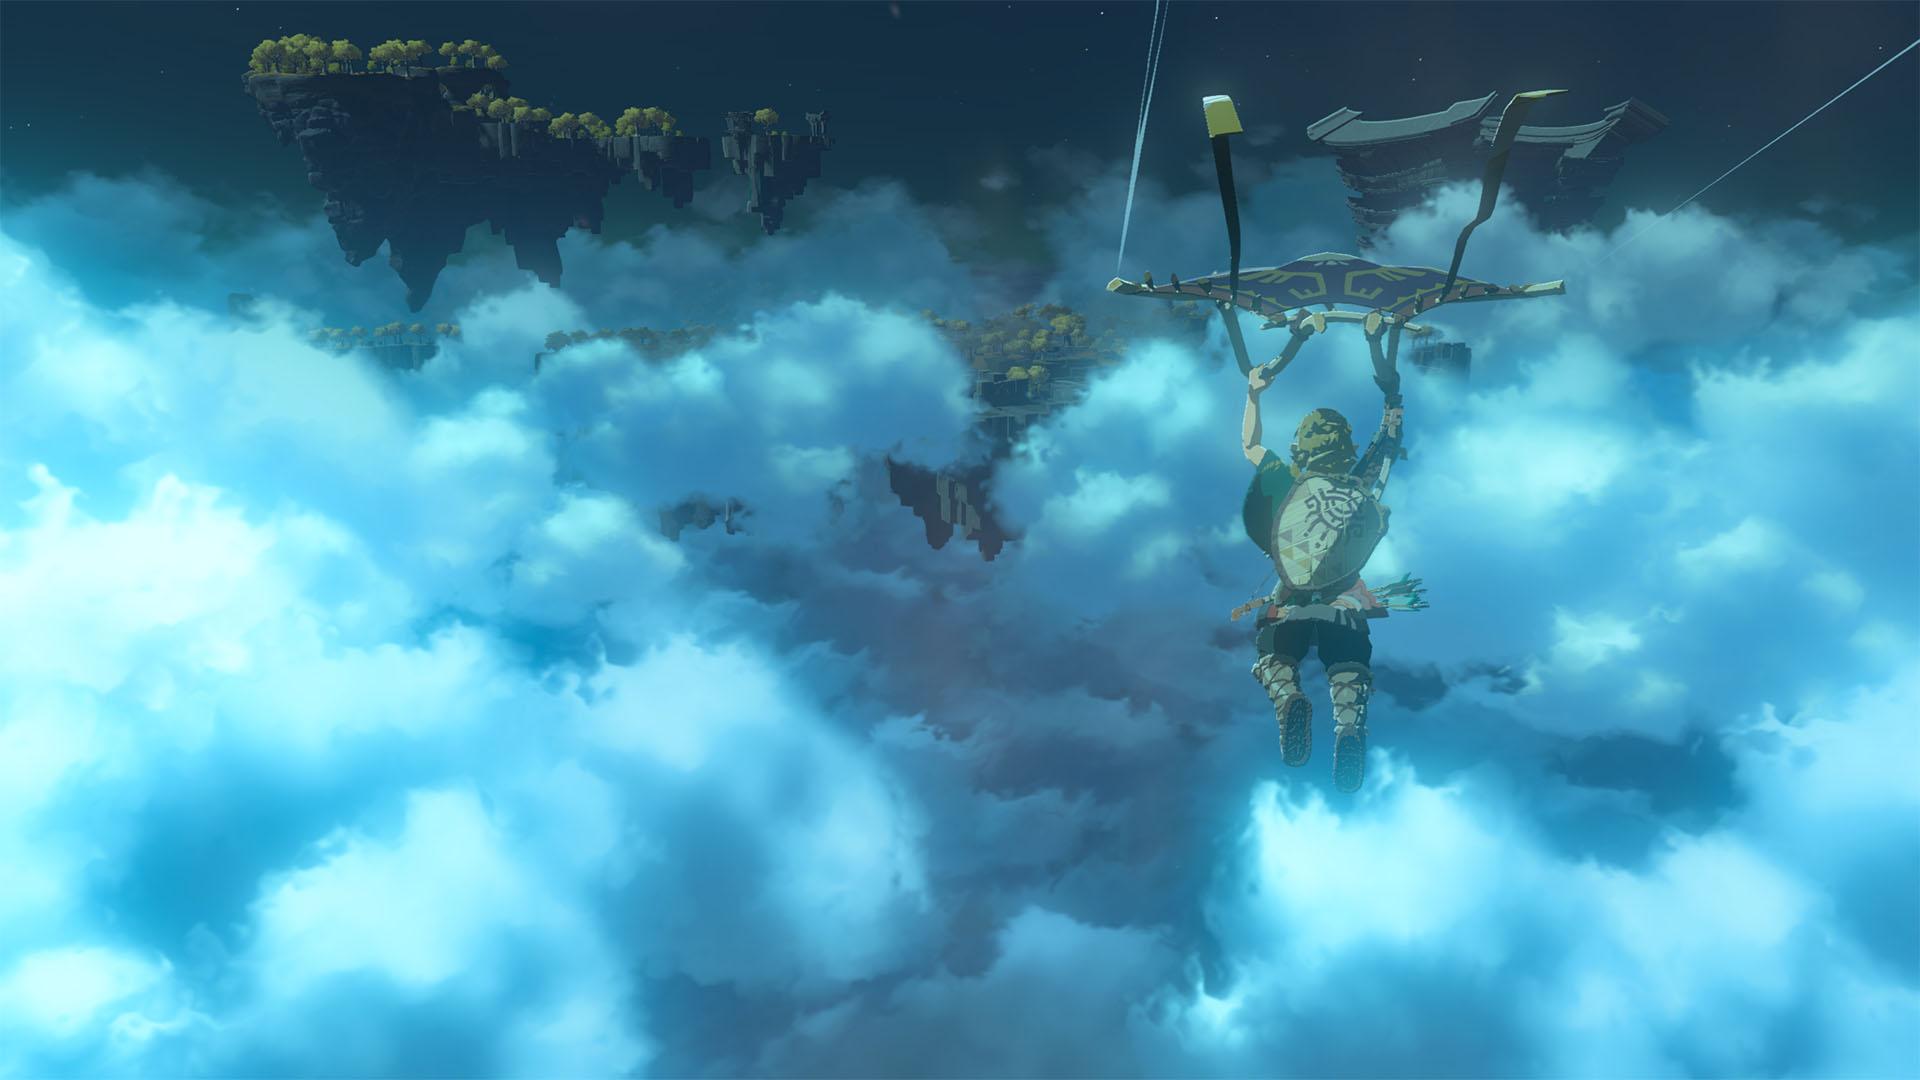 'Lágrimas do Reino' Link deslizando através das nuvens nas proximidades das ilhas do céu.